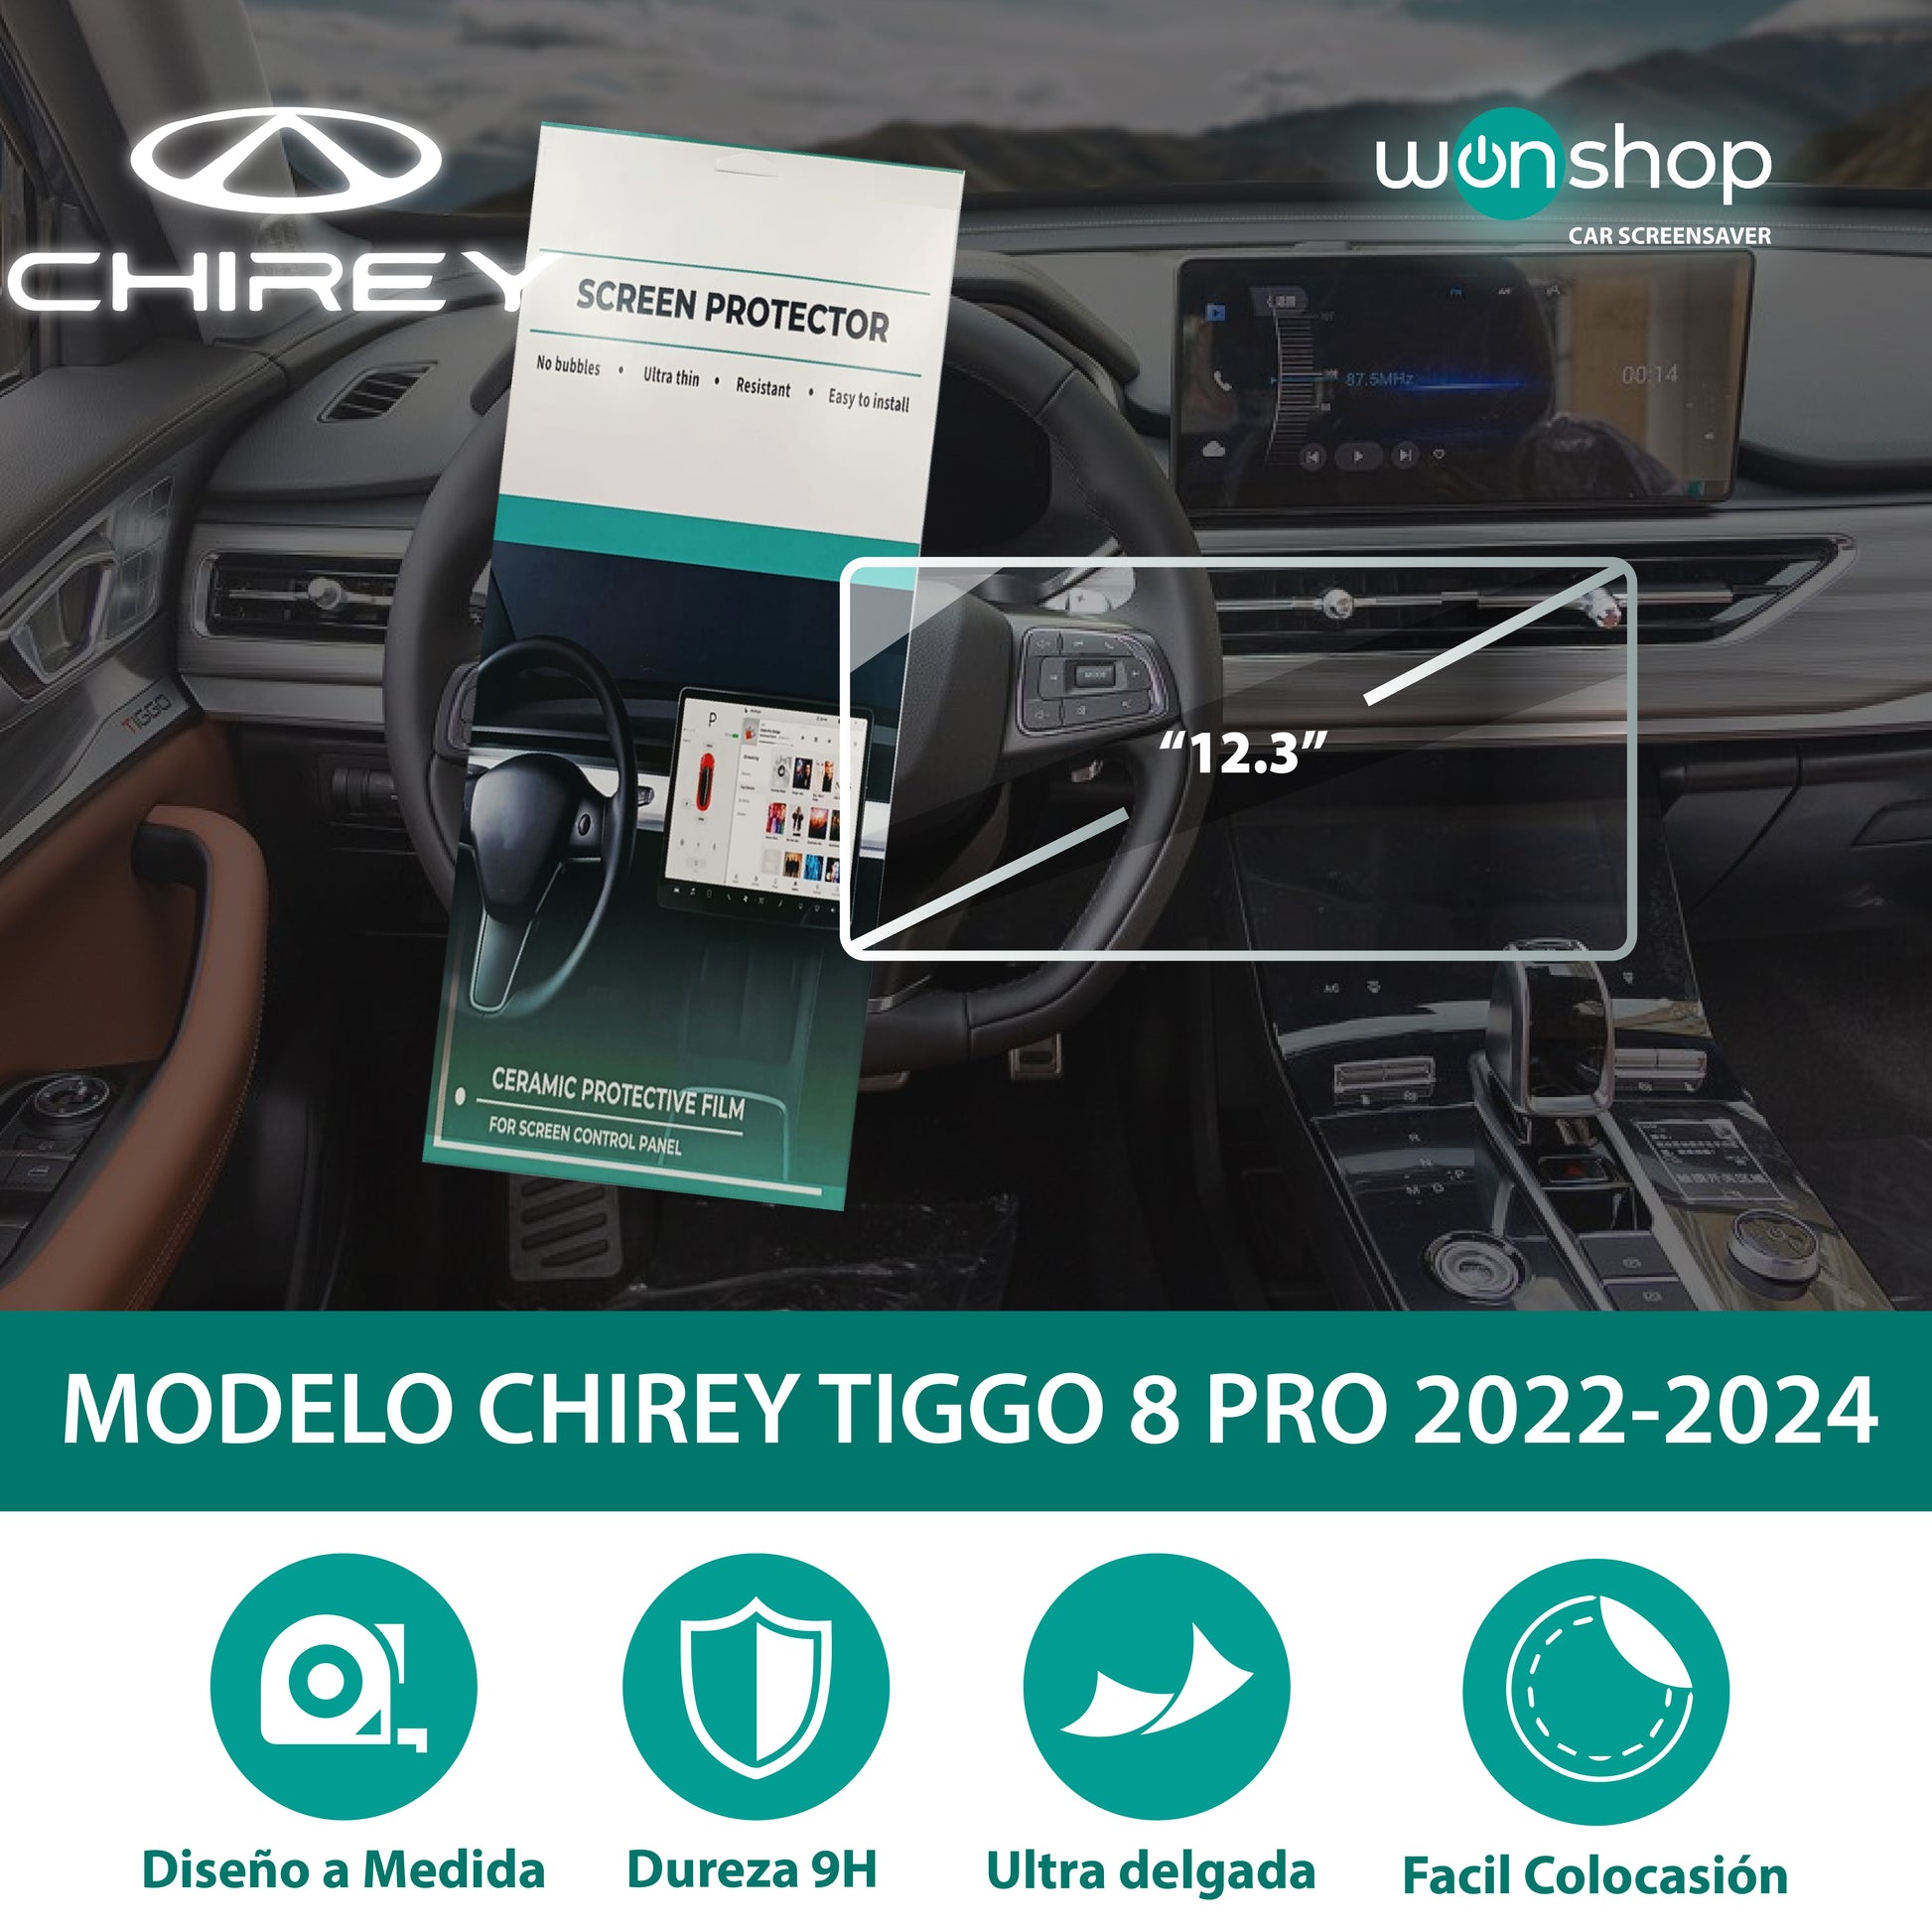 Protector de pantalla táctil para autos Chirey - wonshop.mx